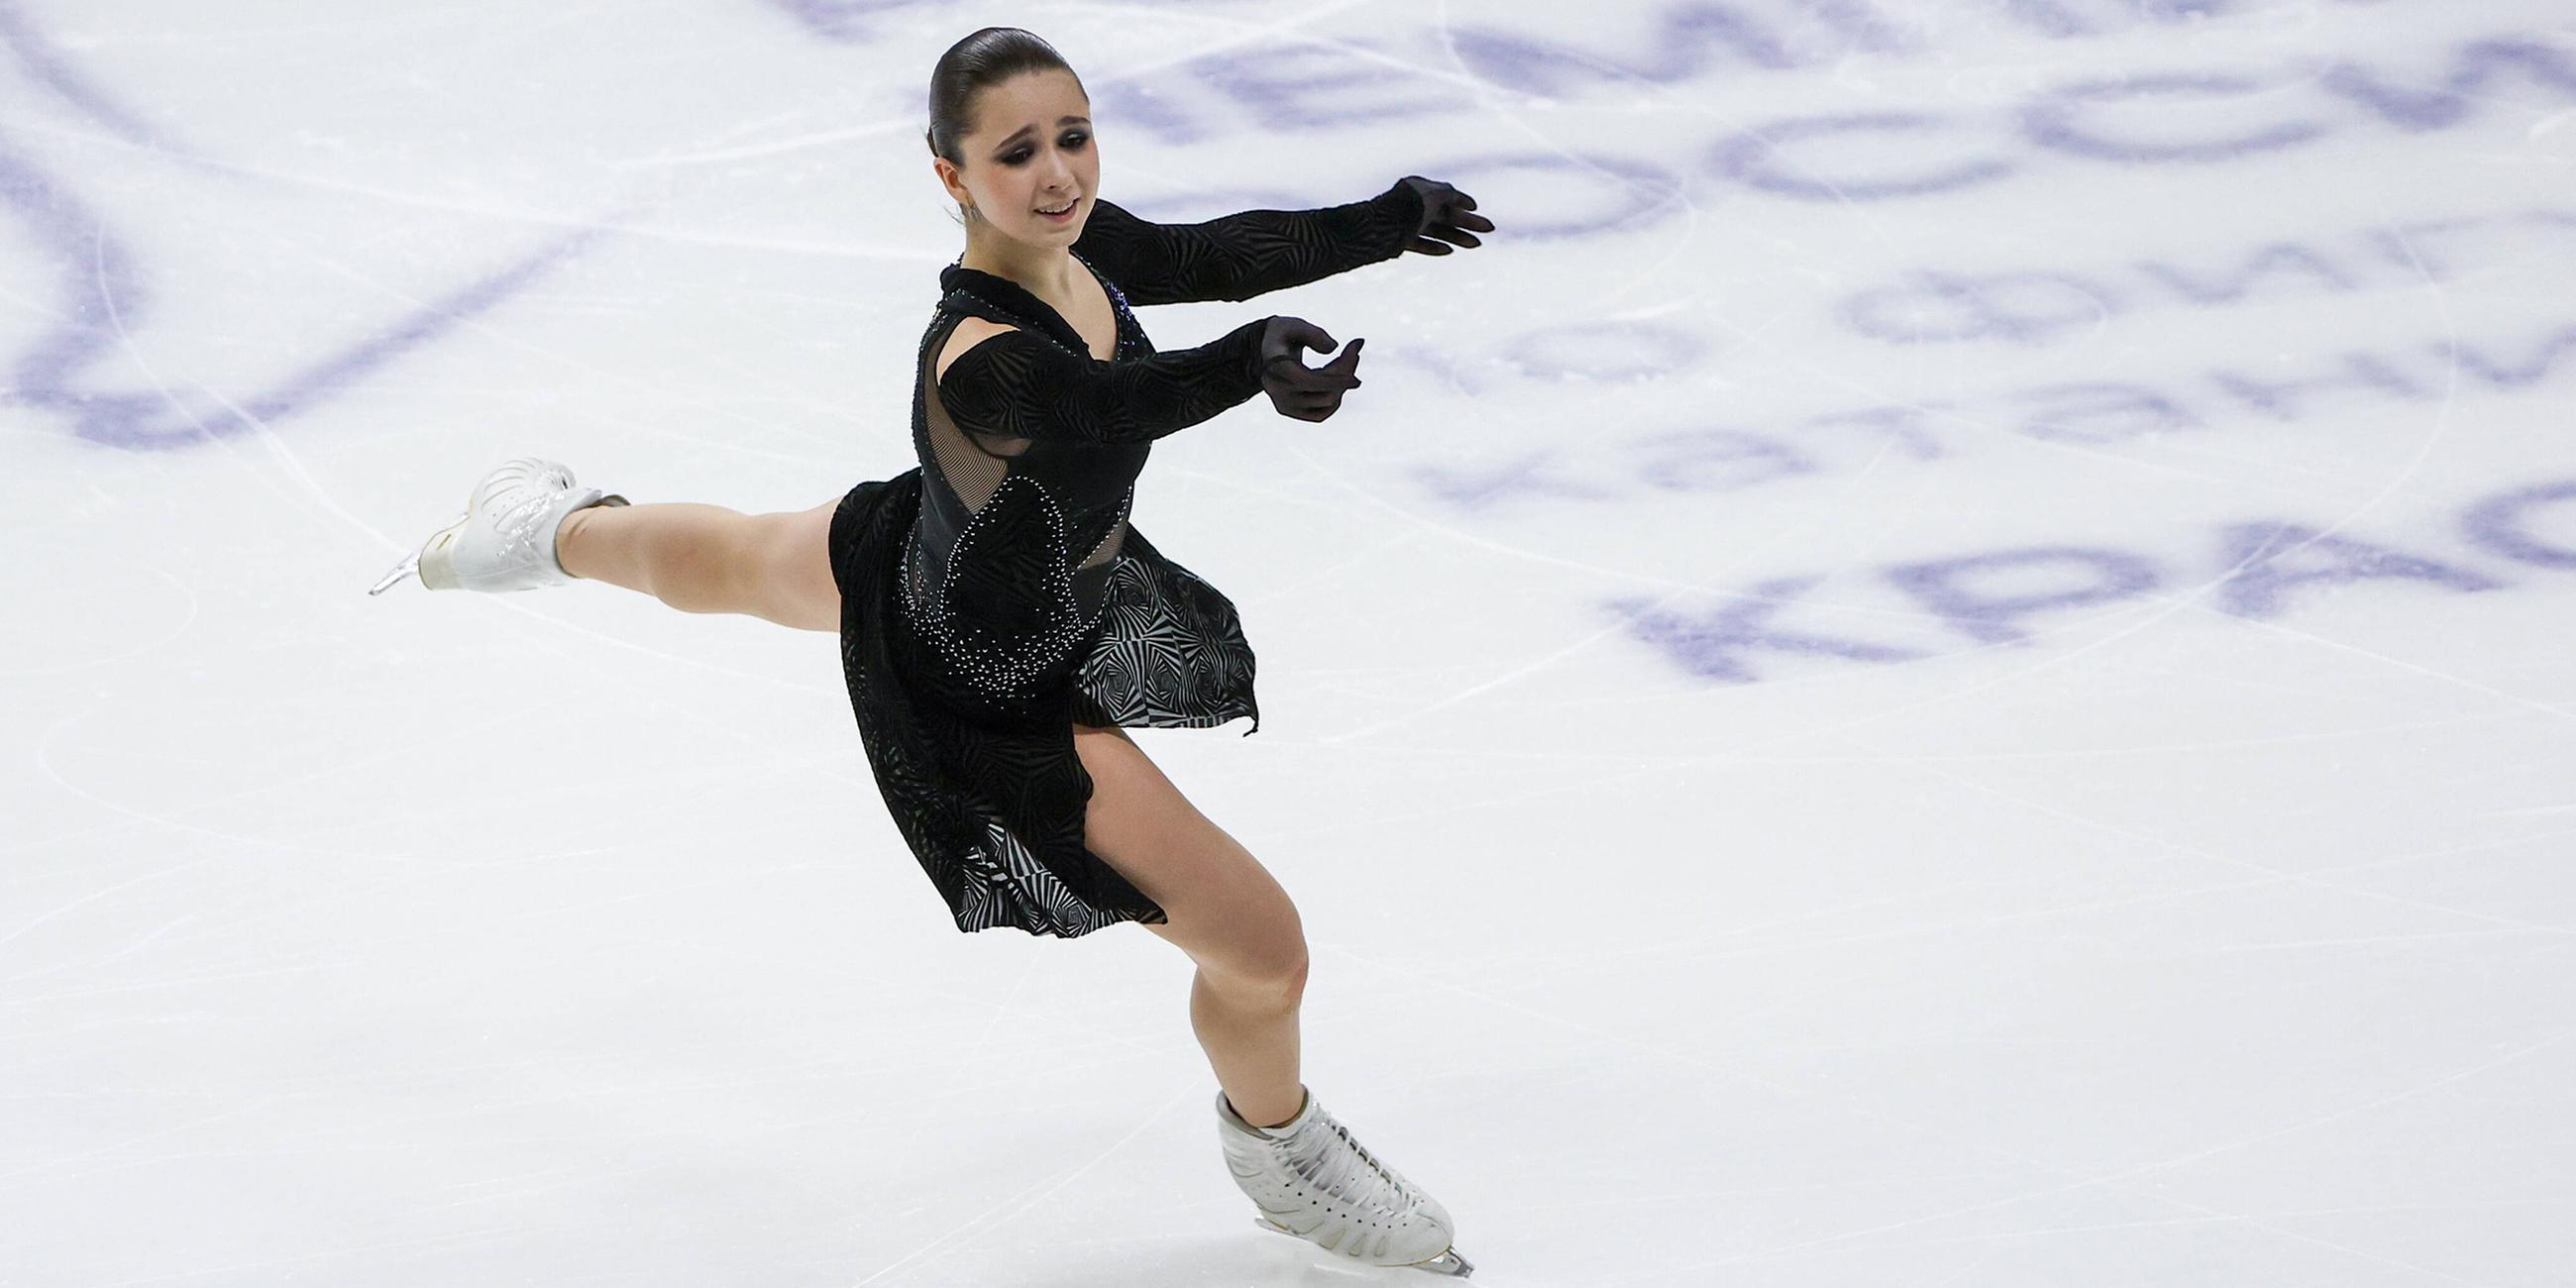 Kamila Walijewa aus Russland beim Eiskunstlauf am 24.12.2022 in Krasnoyarsk.